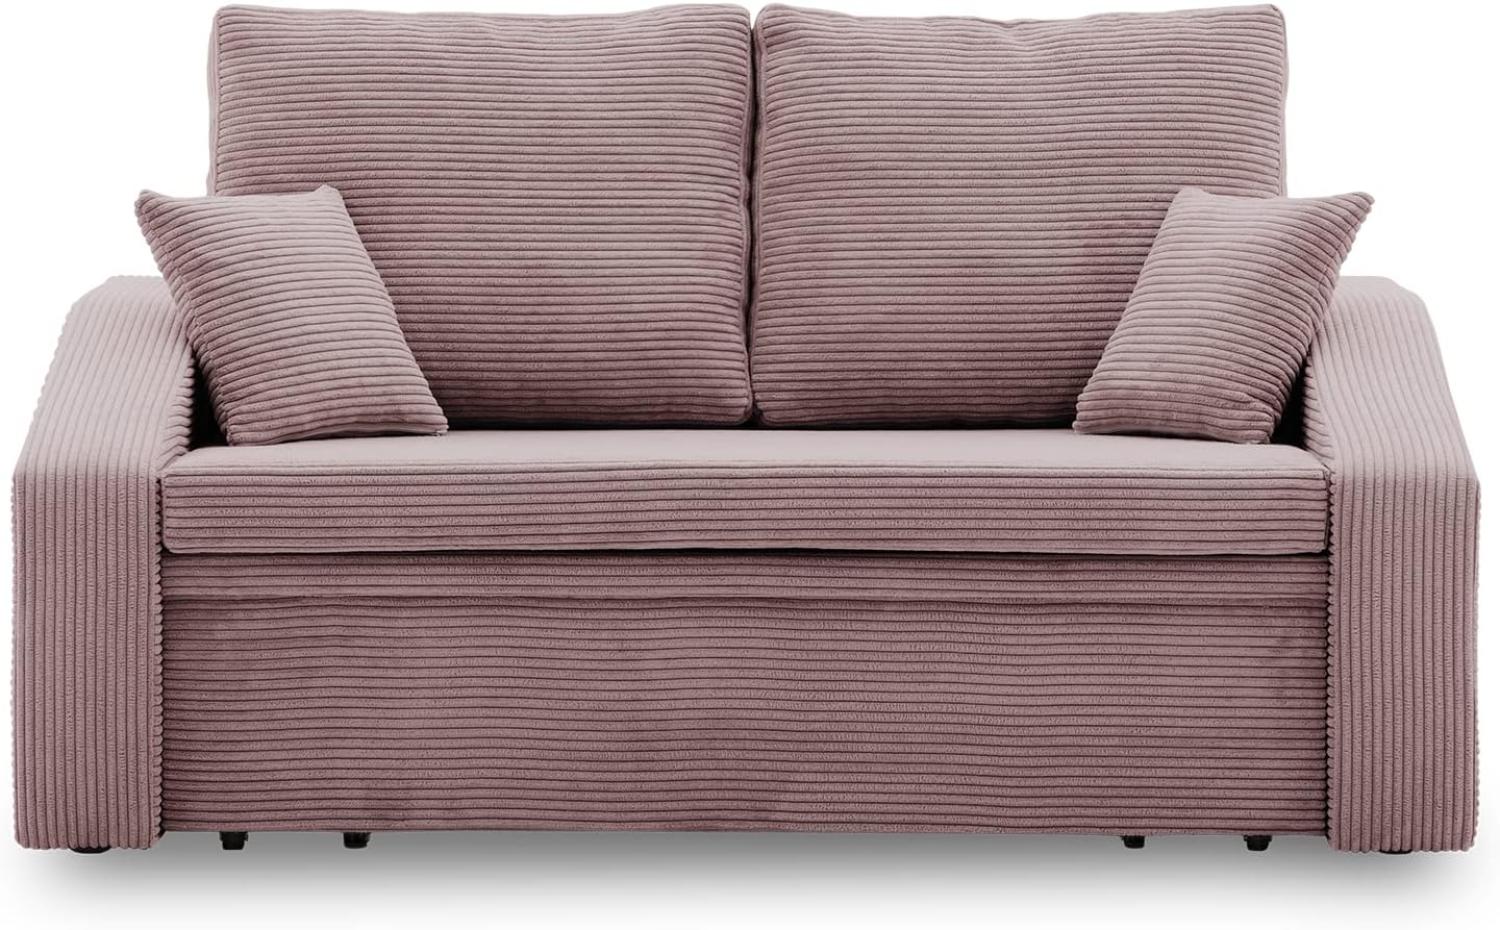 Sofa Dorma mit schlaffunktion, einfacher Aufbau, modernes Design, polstermöbel. Schlafcouch zum Wohnzimmer. Widerstandsfähiges, Minimalistisches Design (POSO 027) Bild 1